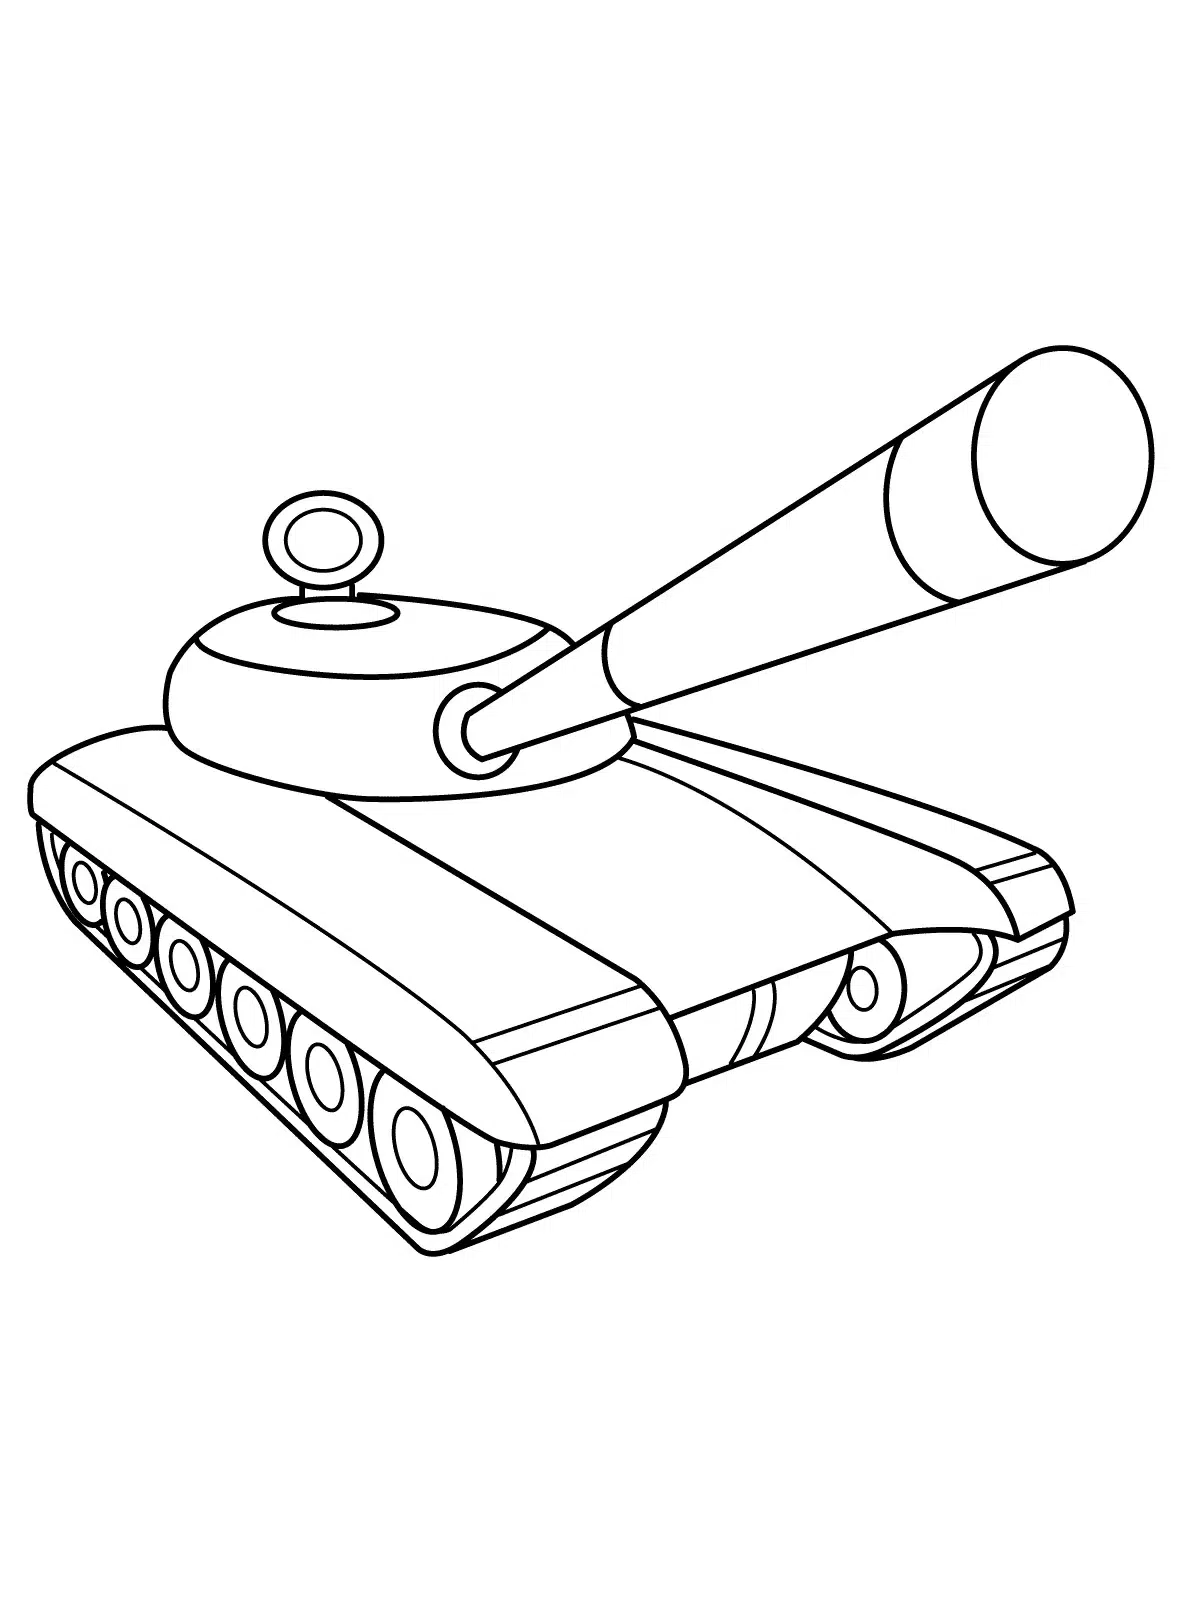 Minyatür Tank boyama sayfası